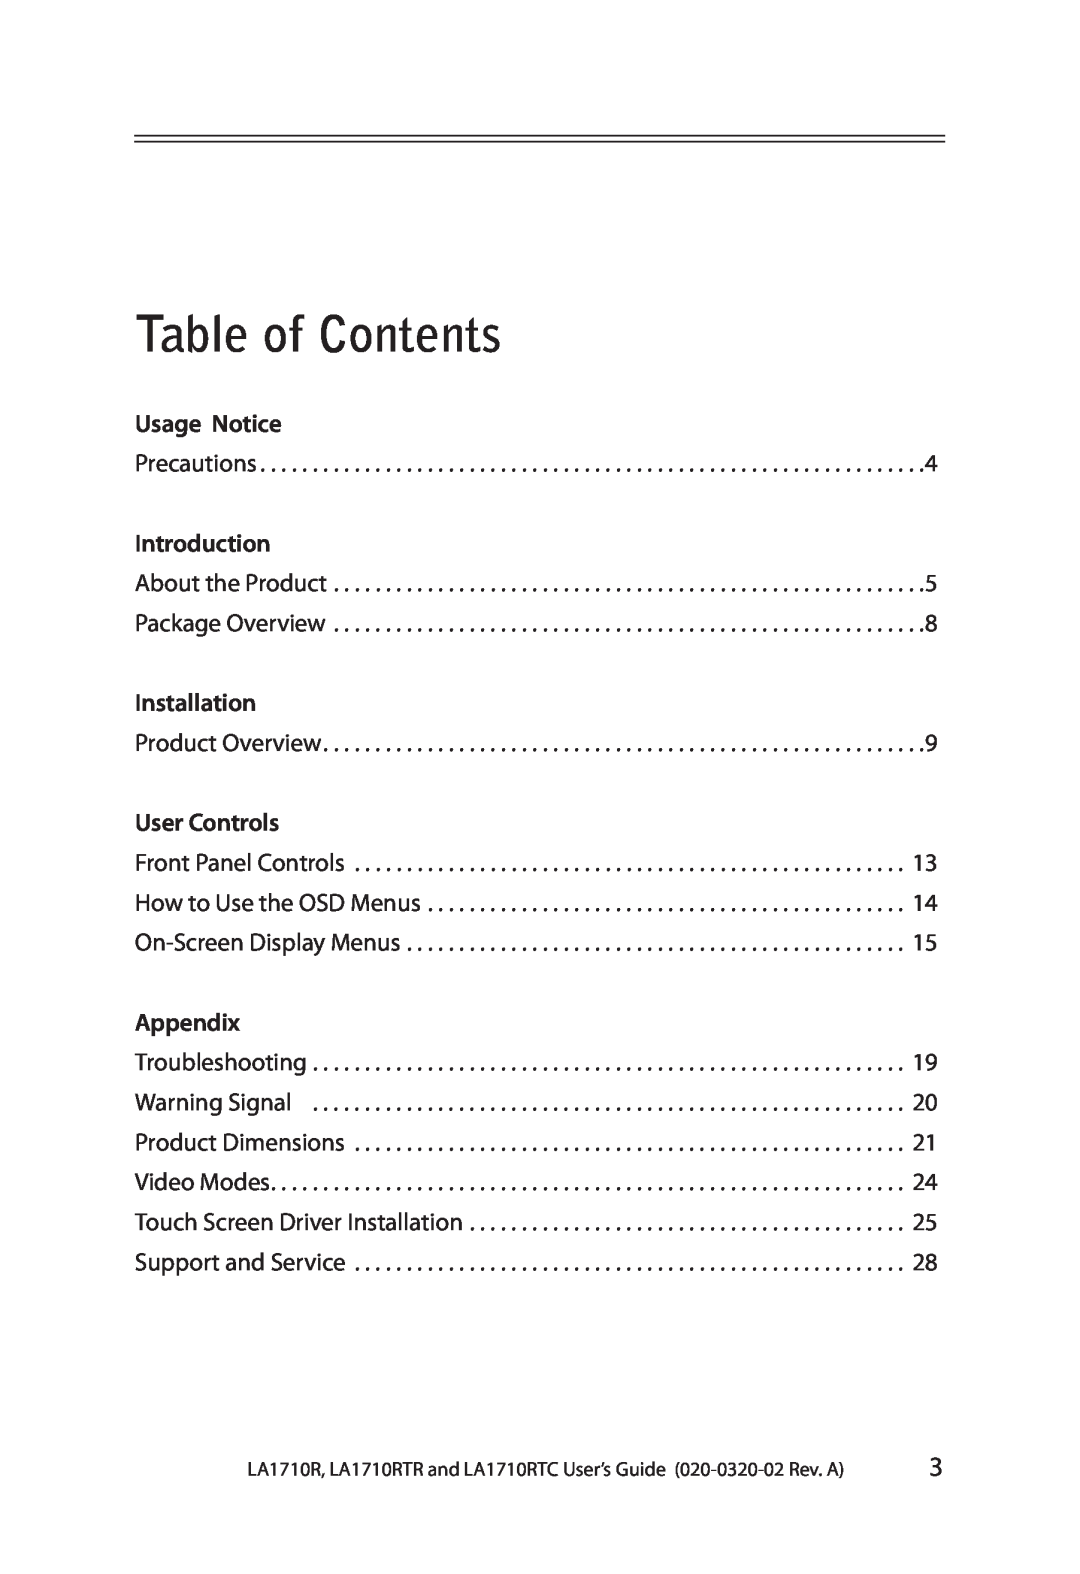 Planar LA1710RTR, LA1710RTC manual Table of Contents, Usage Notice, Introduction, Installation, User Controls, Appendix 